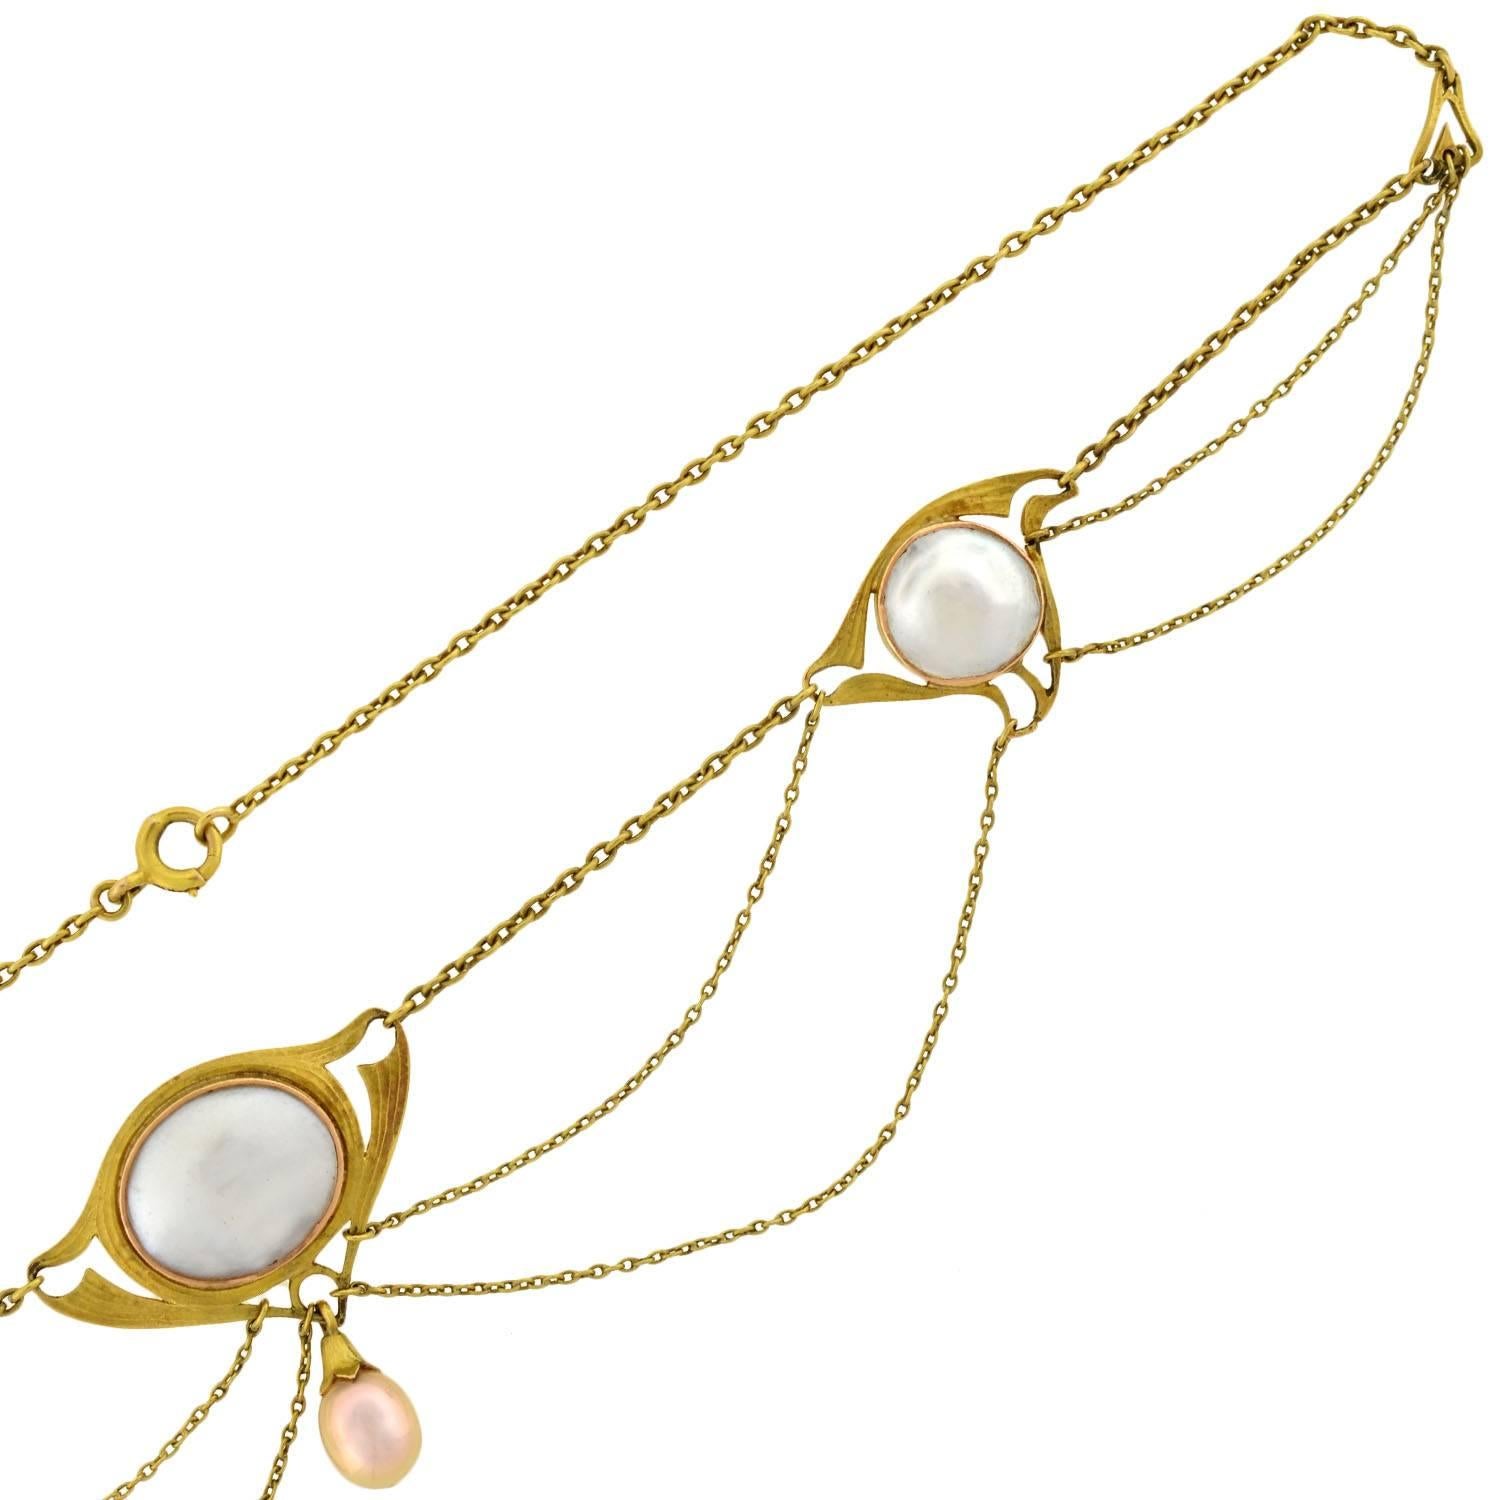 art nouveau necklaces for sale